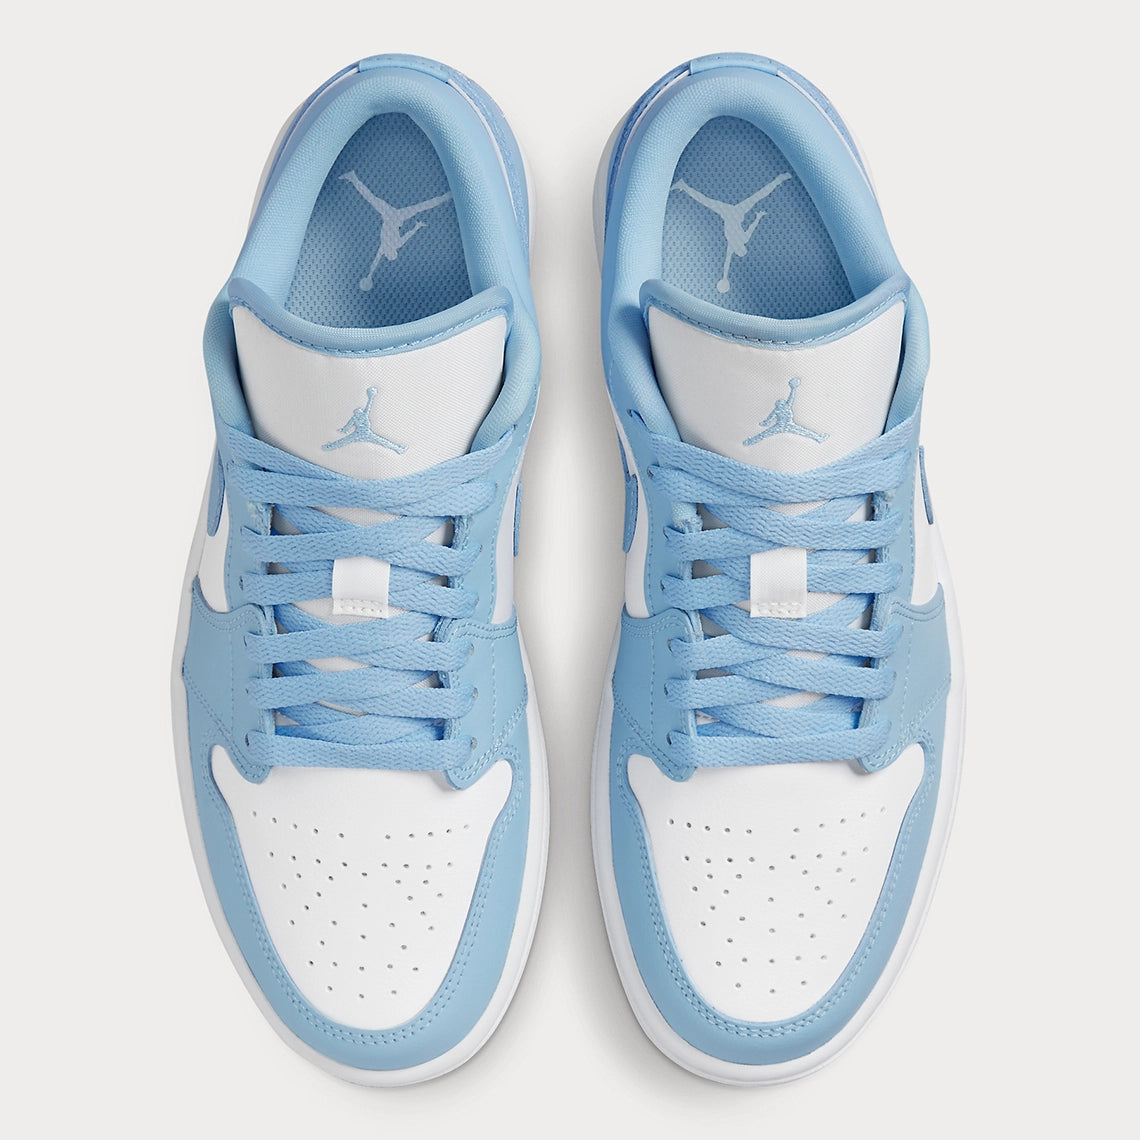 Air Jordan 1 Low White Ice Blue